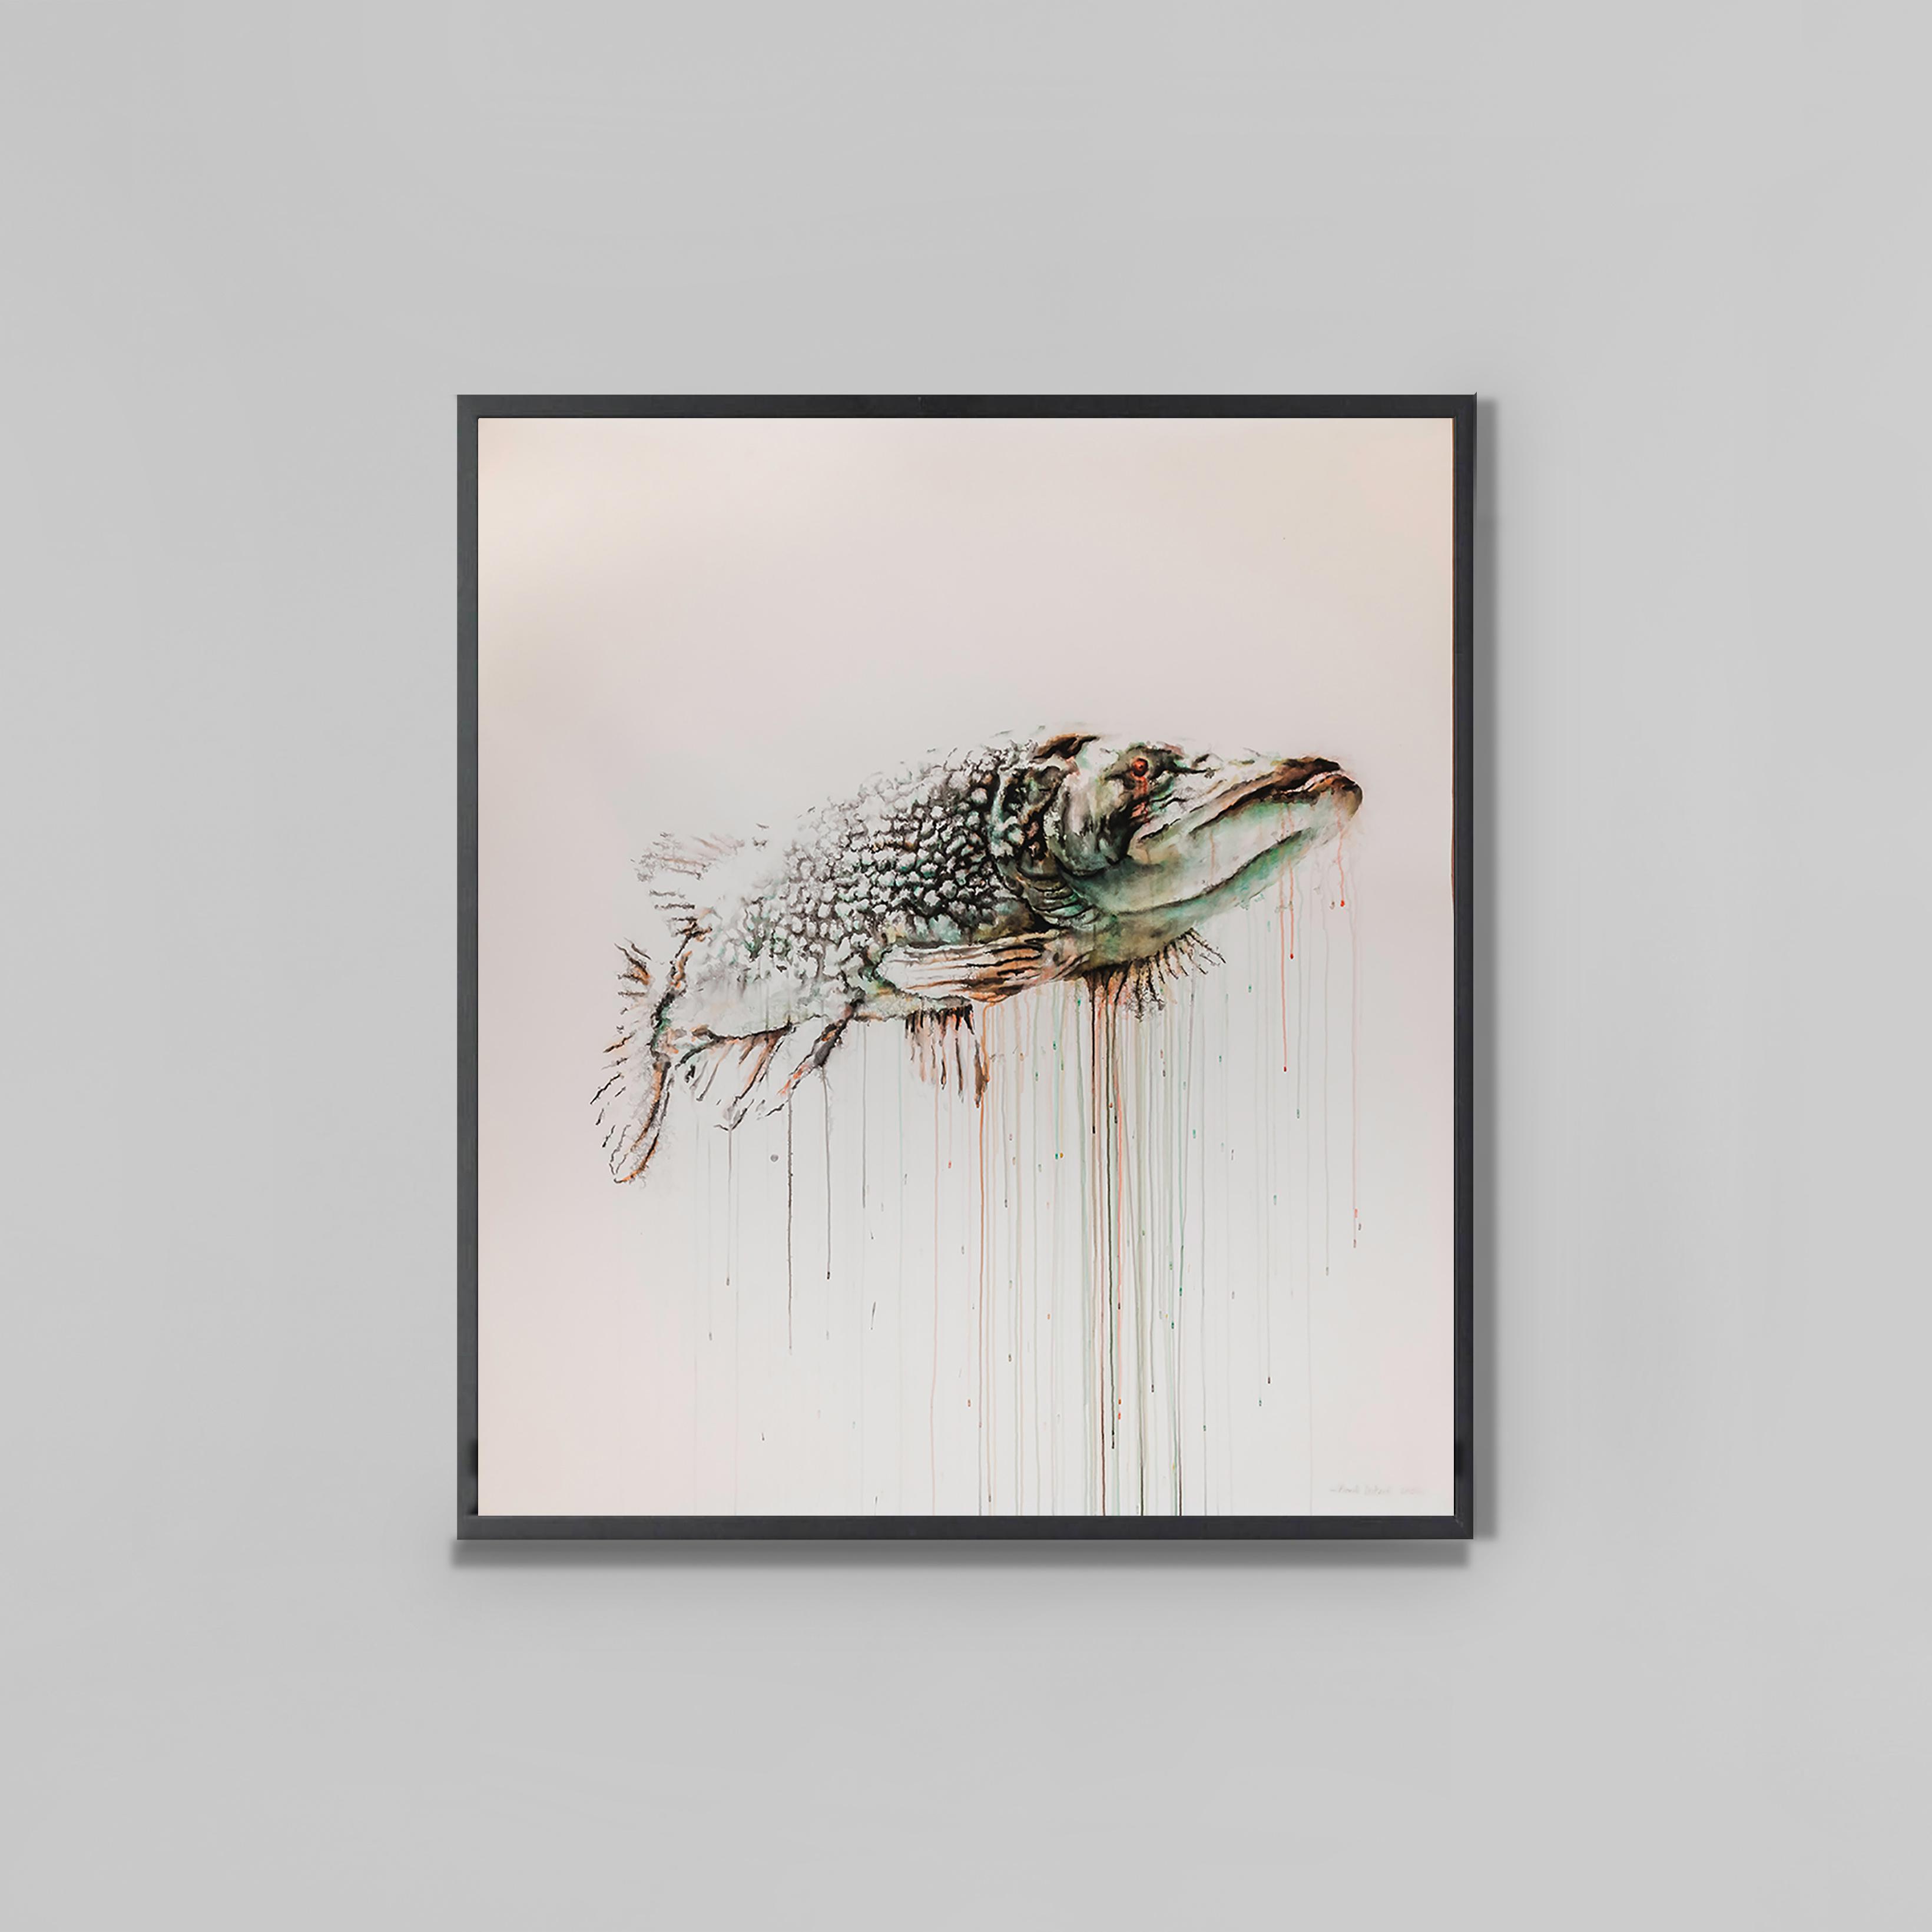 Franck Lestard
Sans titre, 2012
Aquarelle et encre de chine sur papier
180 x 148 cm